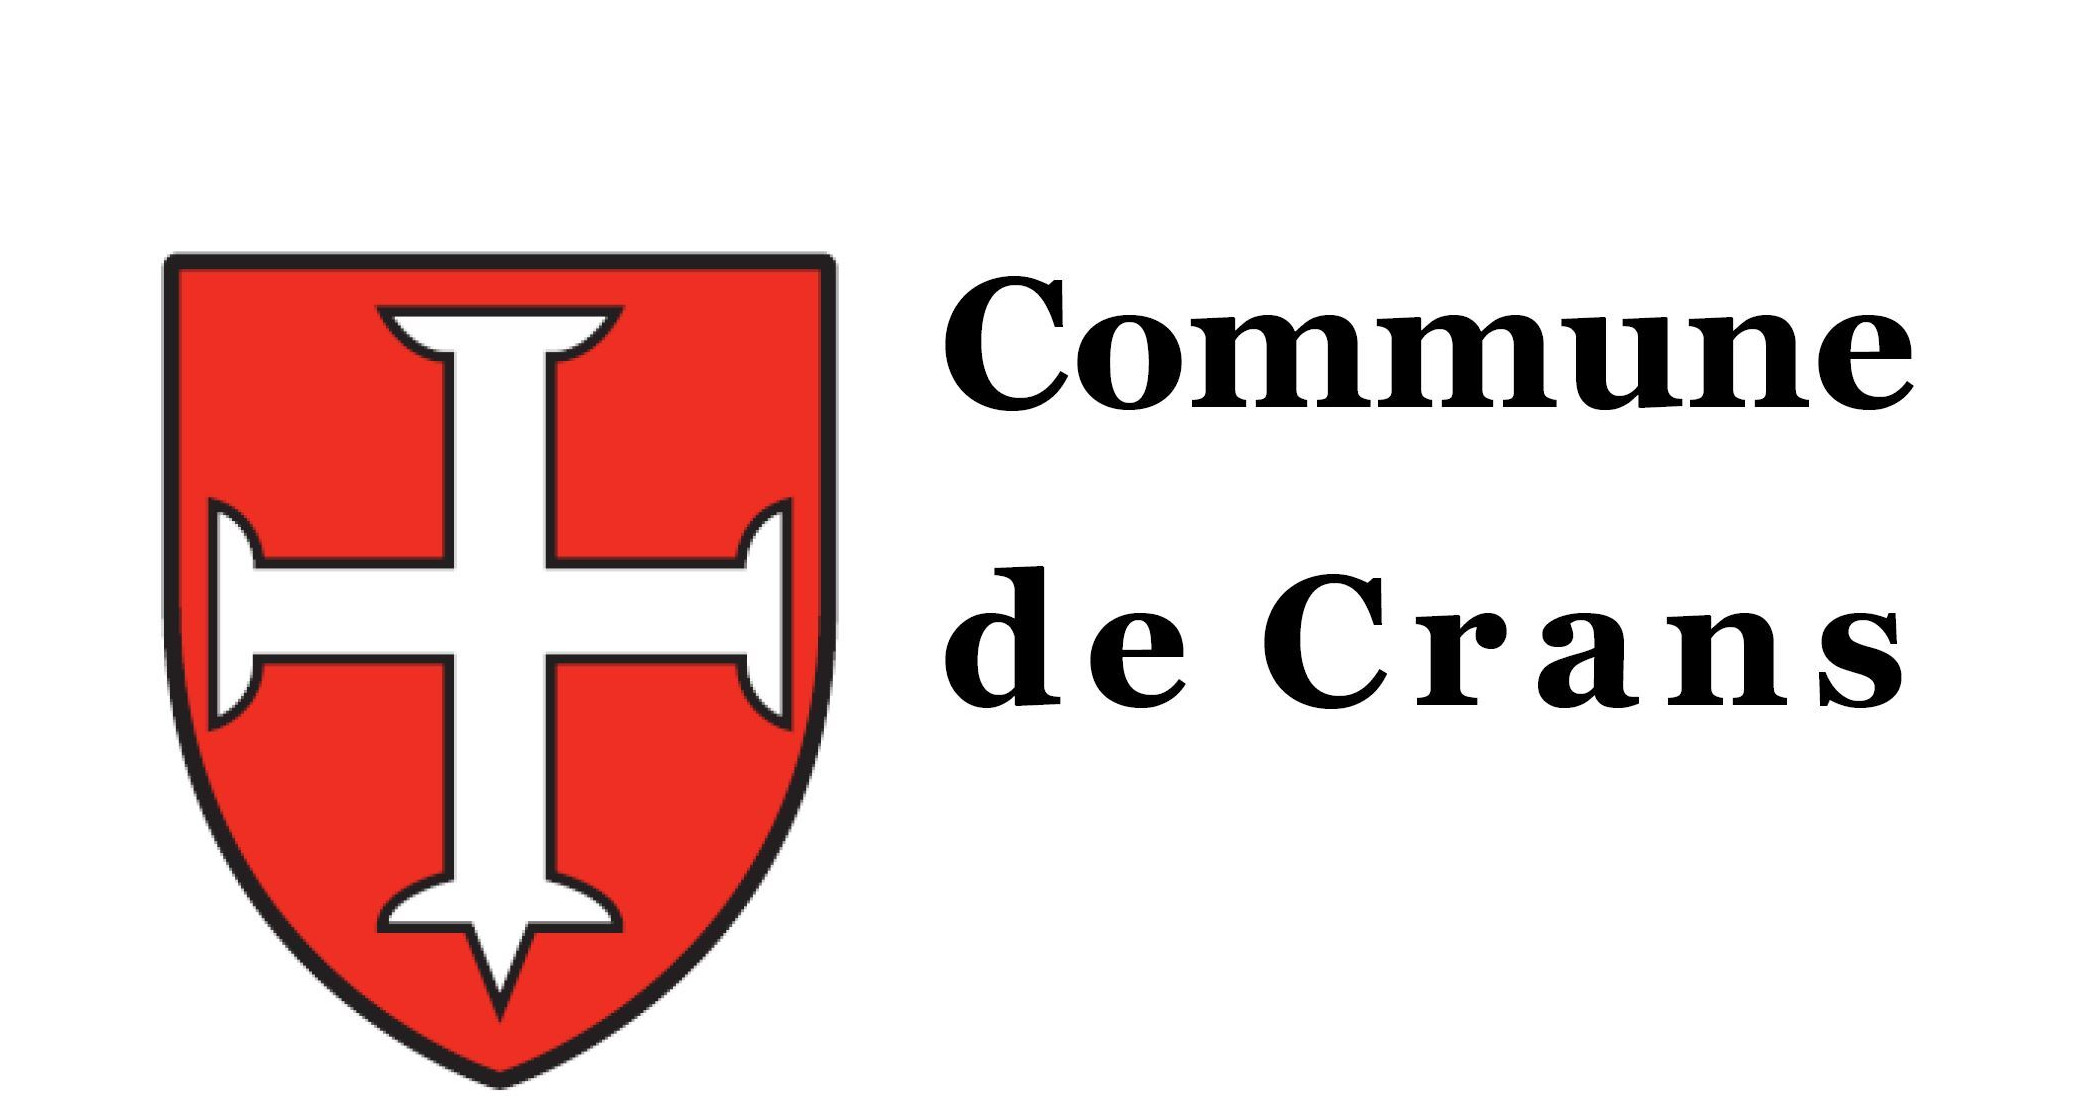 Commune de Crans logo